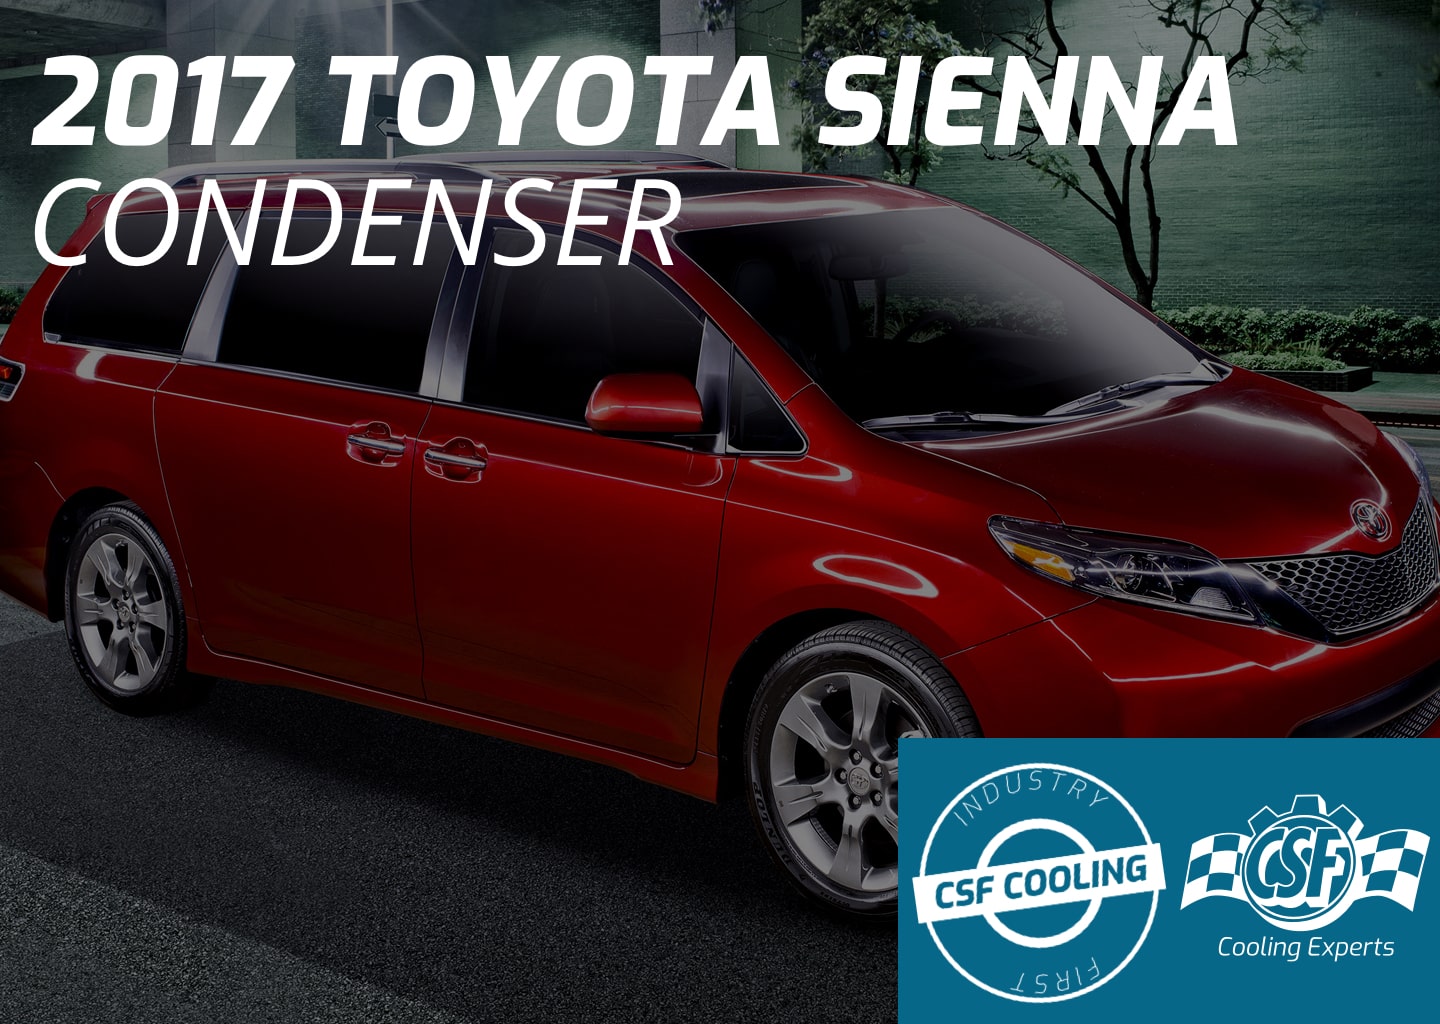 2017 Toyota Sienna Condenser